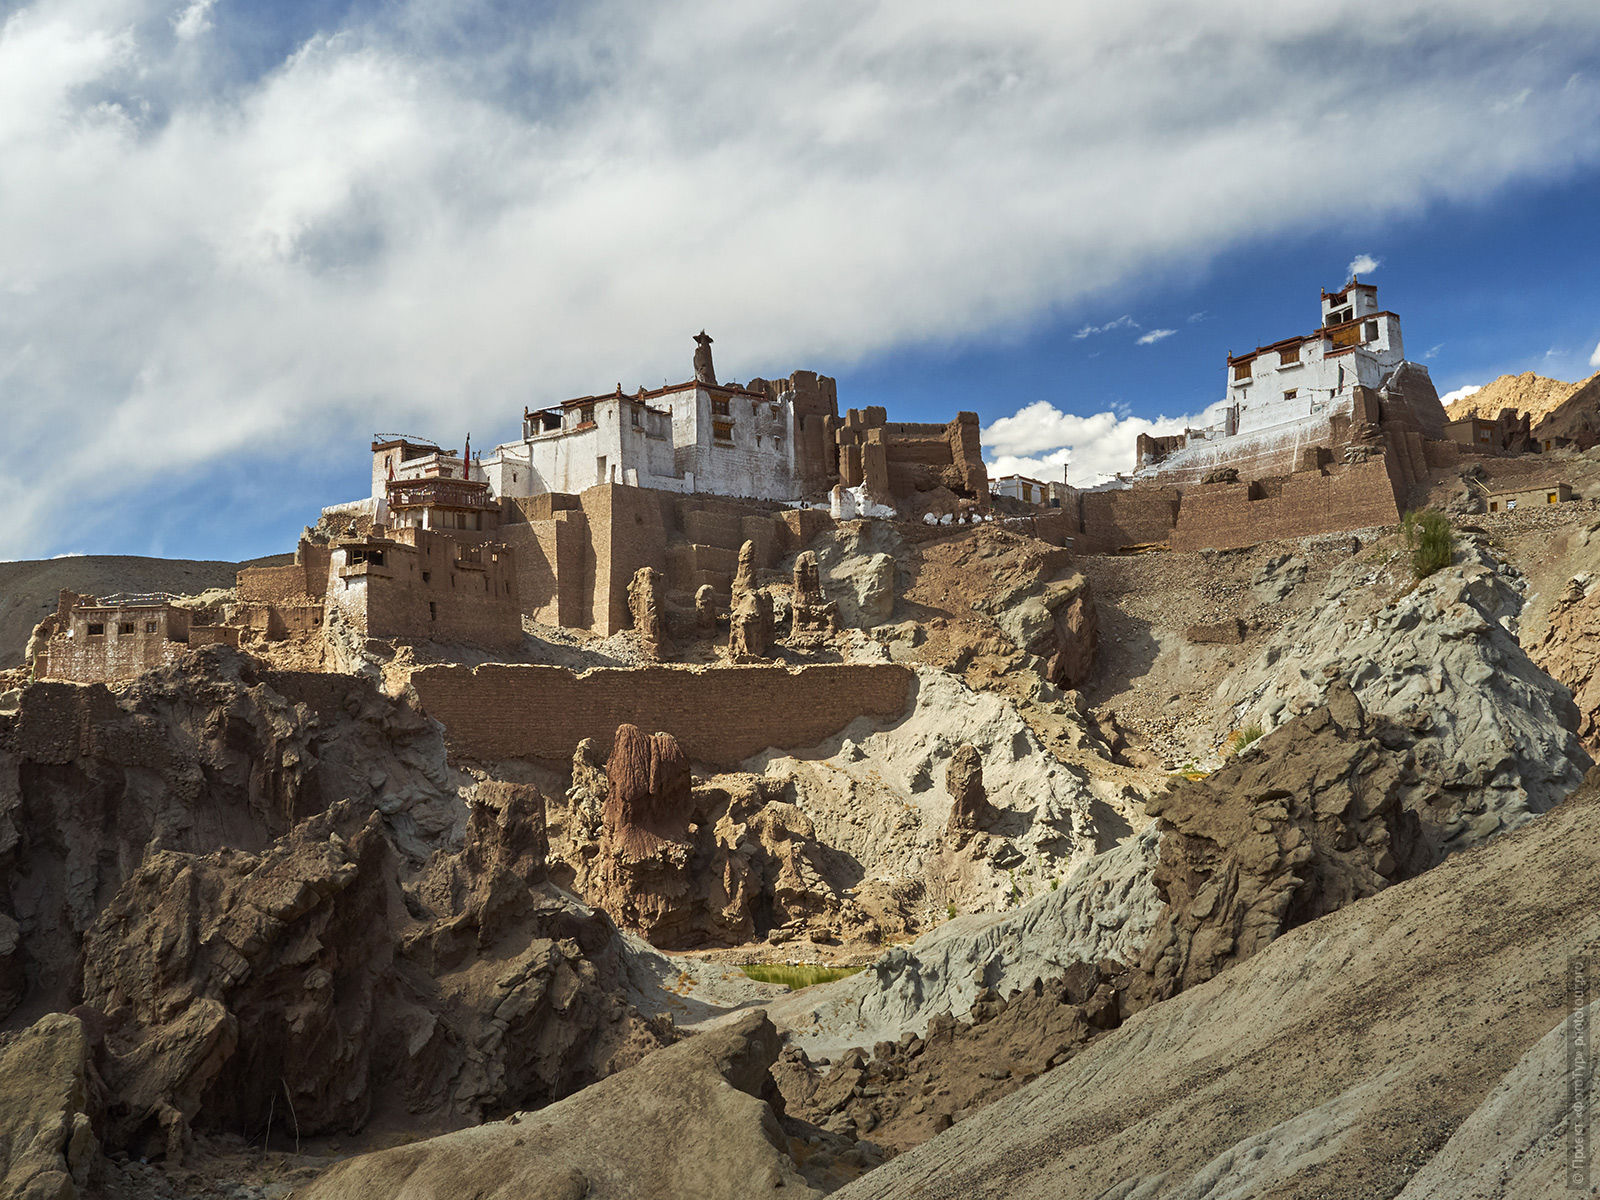 Basgo Buddhist Monastery Natural Park, Ladakhu Women's Tour, August 31 - September 14, 2019.